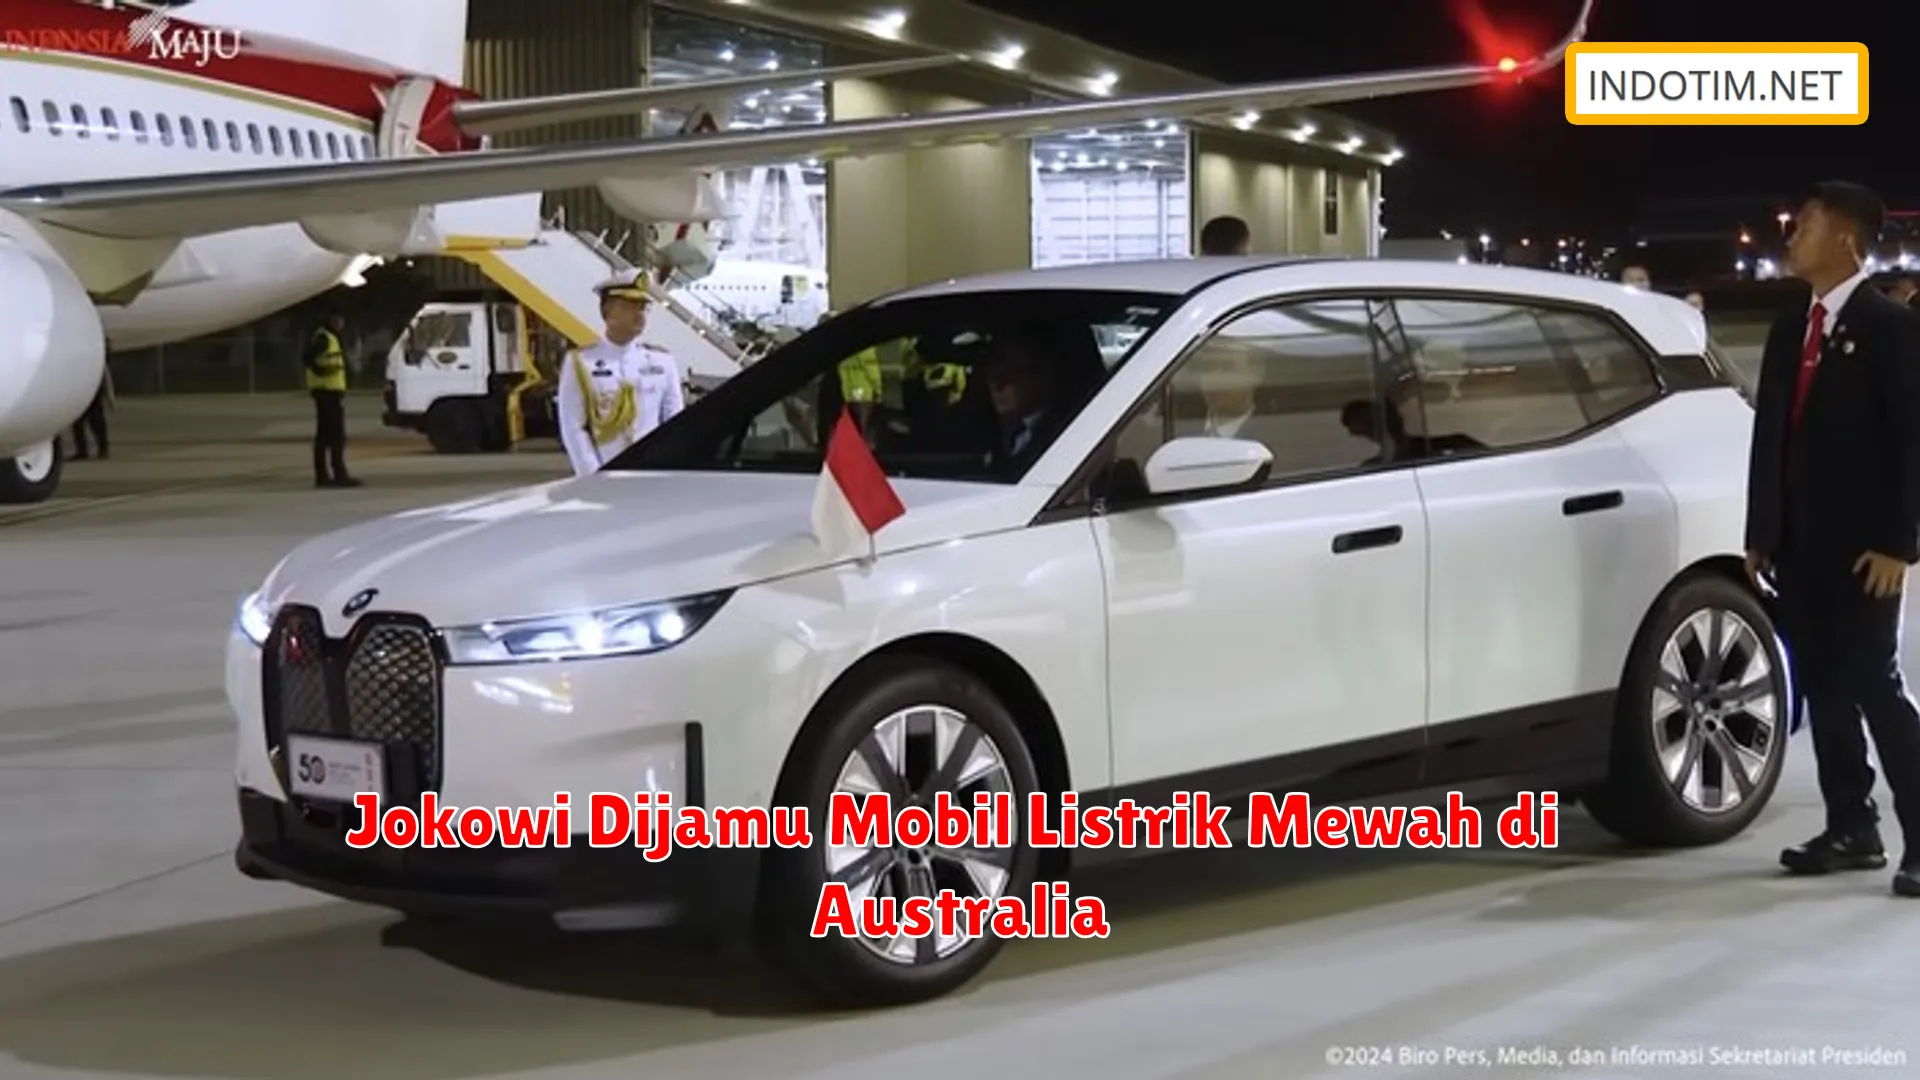 Jokowi Dijamu Mobil Listrik Mewah di Australia